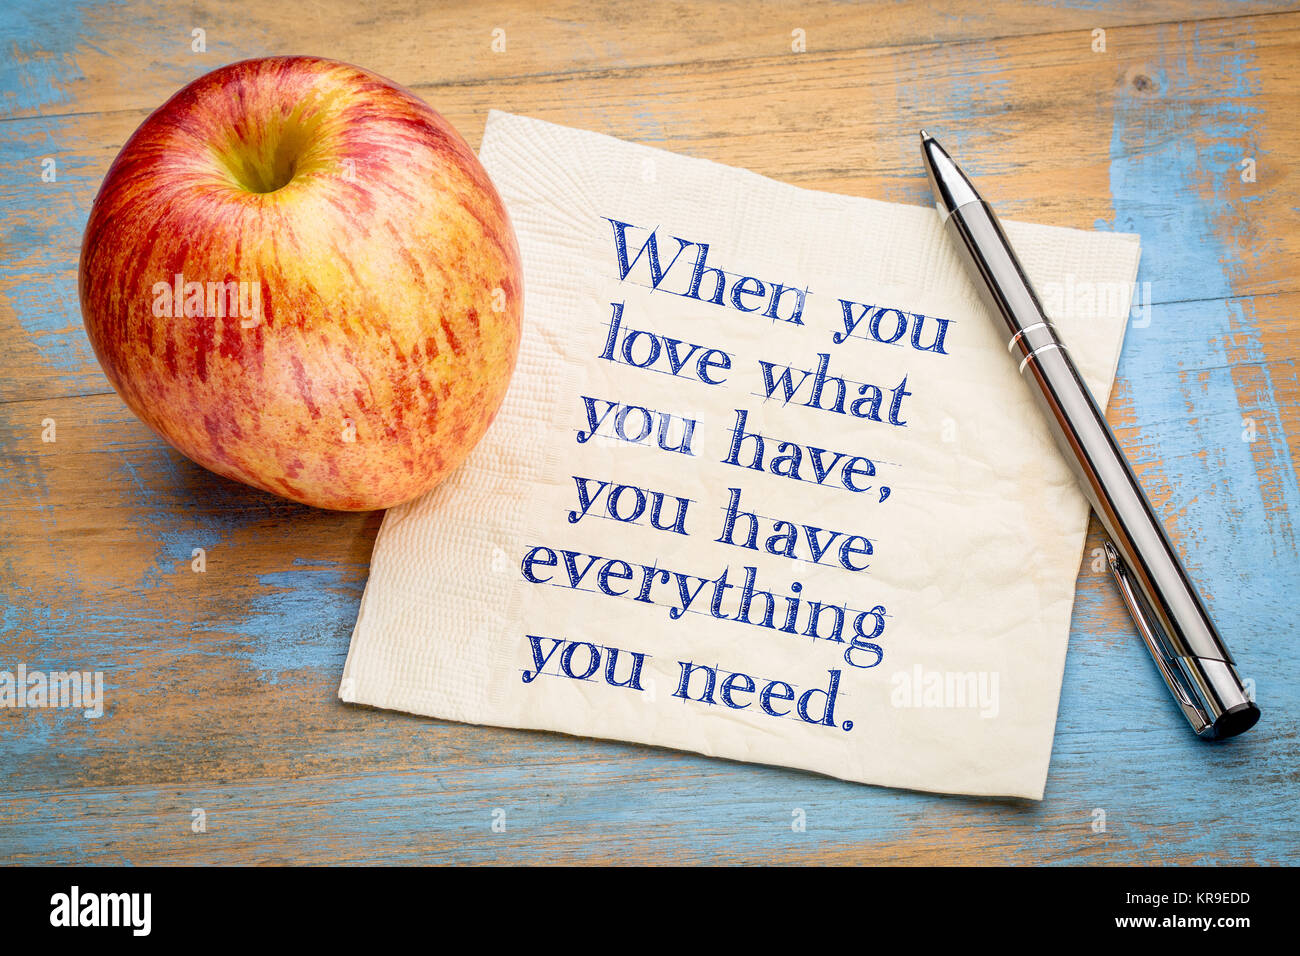 Wenn Sie lieben, was Sie haben, haben Sie alles was man braucht - inspiraitonal Handschrift auf eine Serviette mit einem frischen Apfel Stockfoto